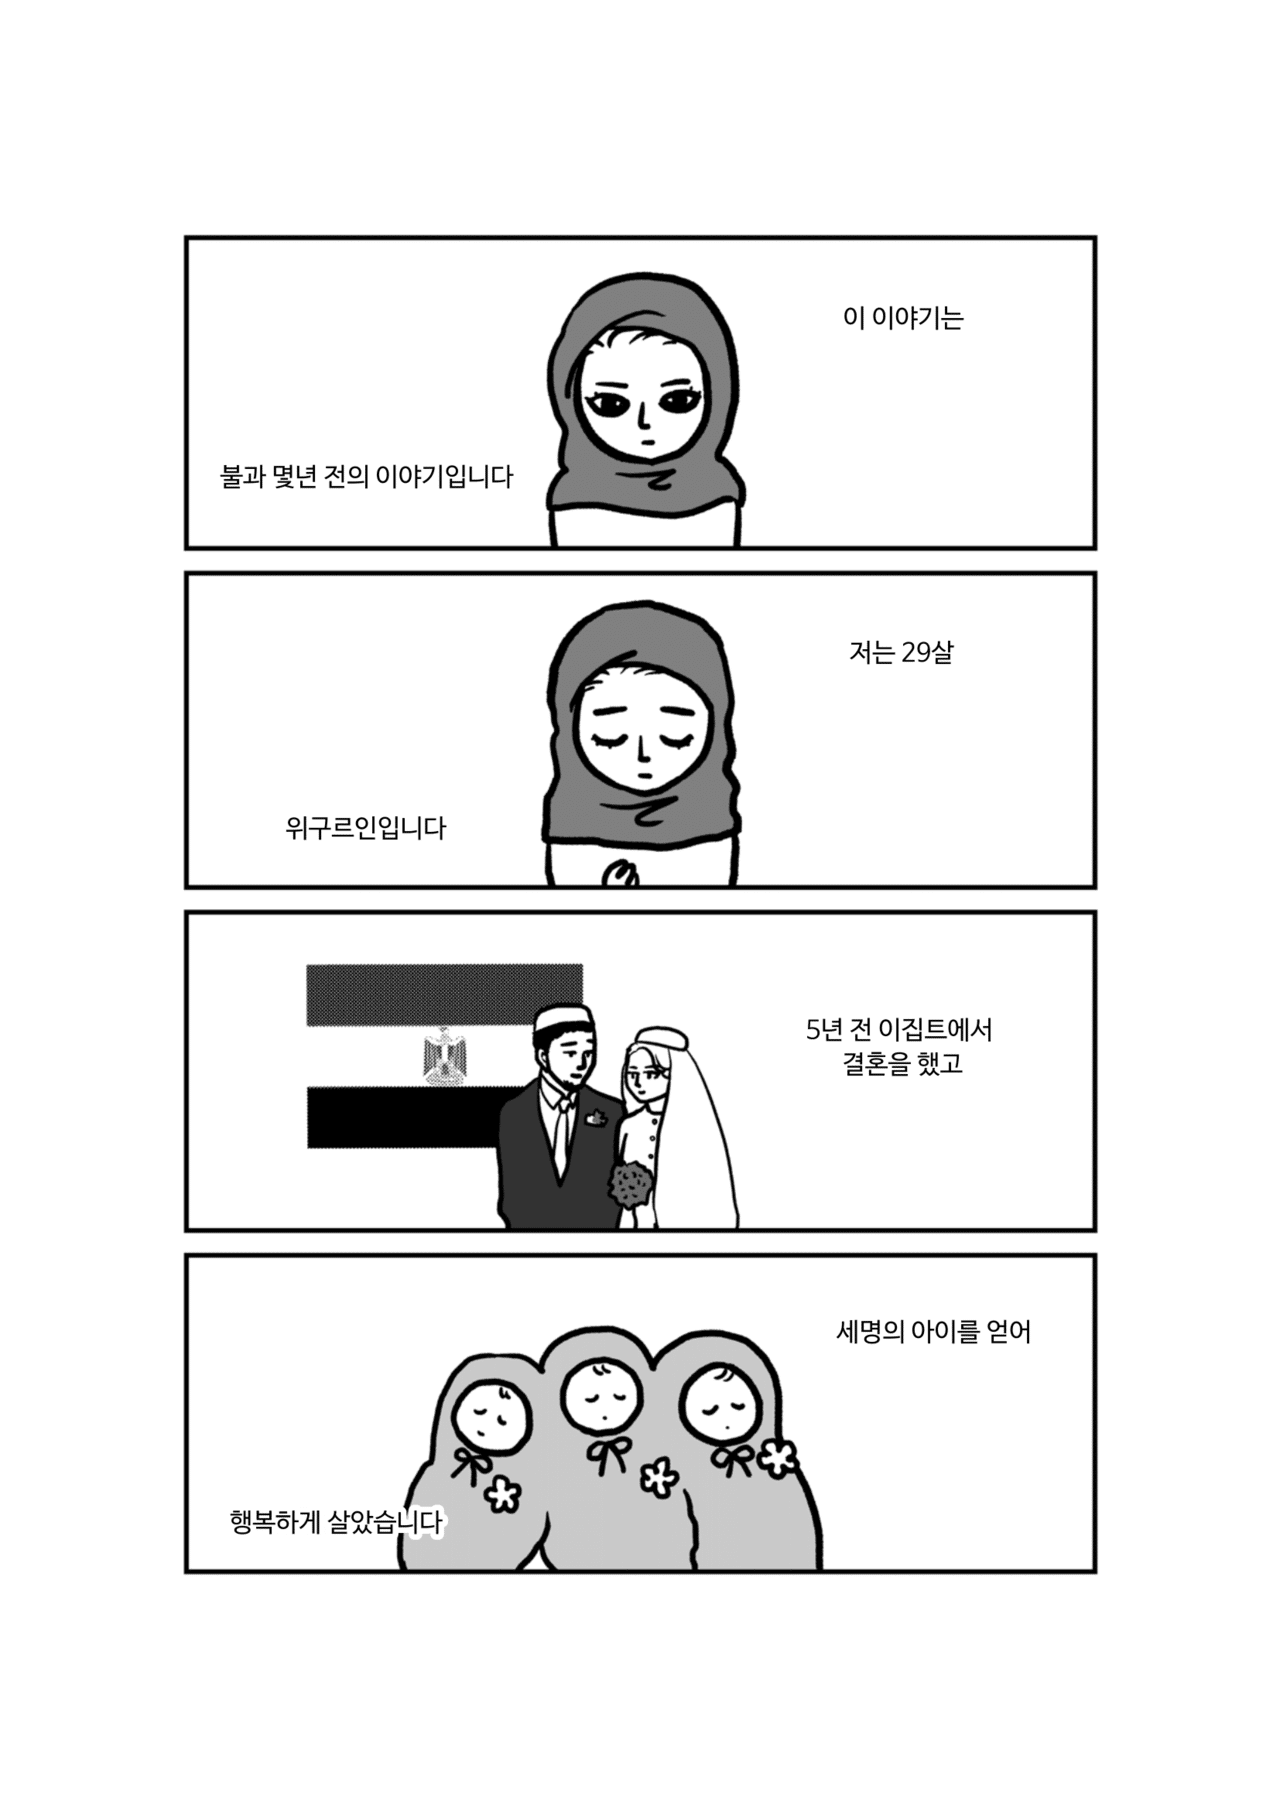 私の身に起きたこと韓国-01